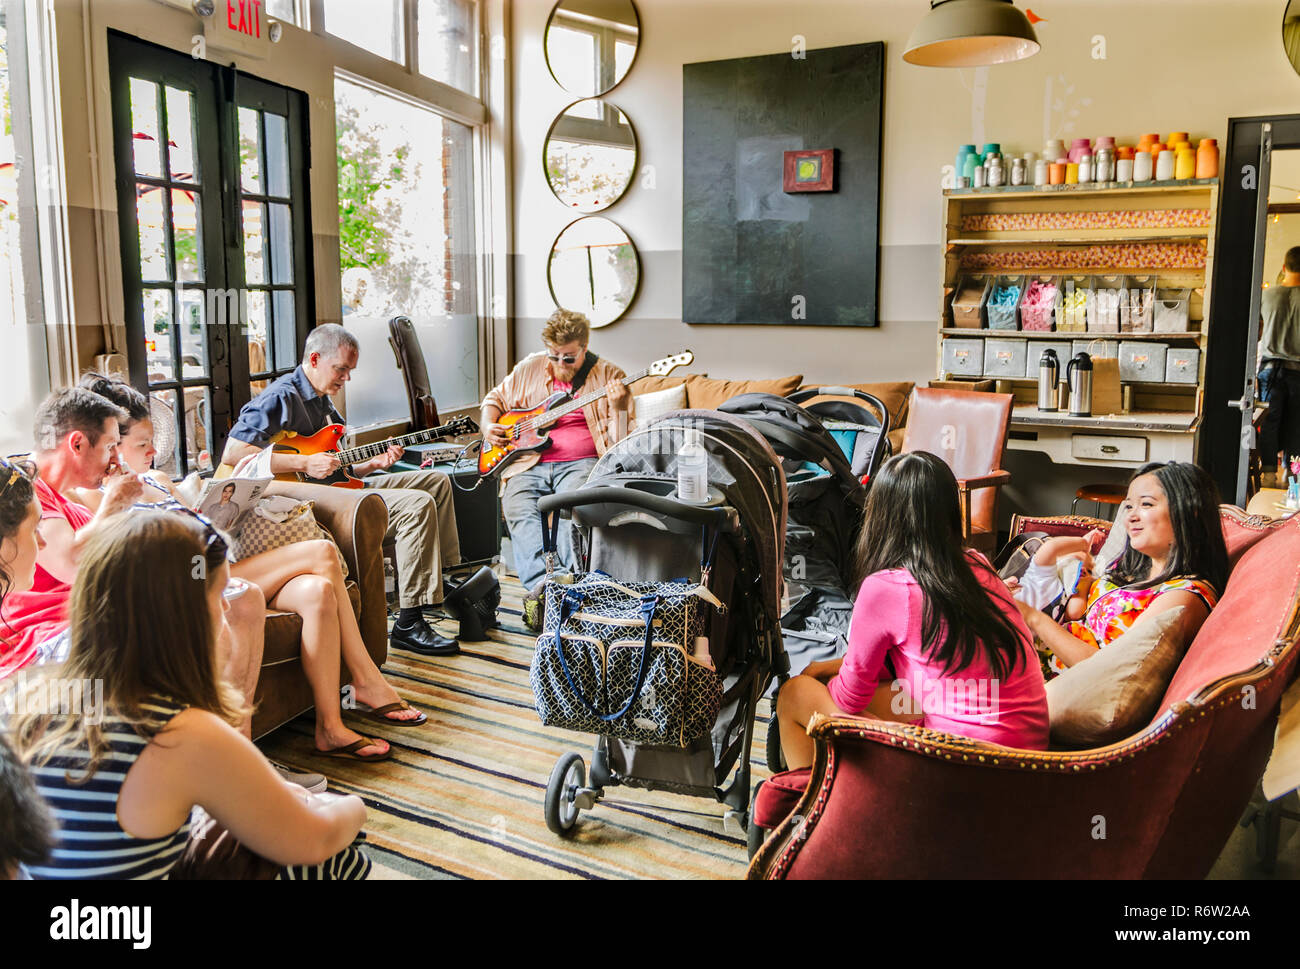 Kunden Musik hören bei Sun in meinem Bauch Cafe, 15. Juni 2014, in der Kirkwood Gemeinschaft von Atlanta, Georgia. Stockfoto